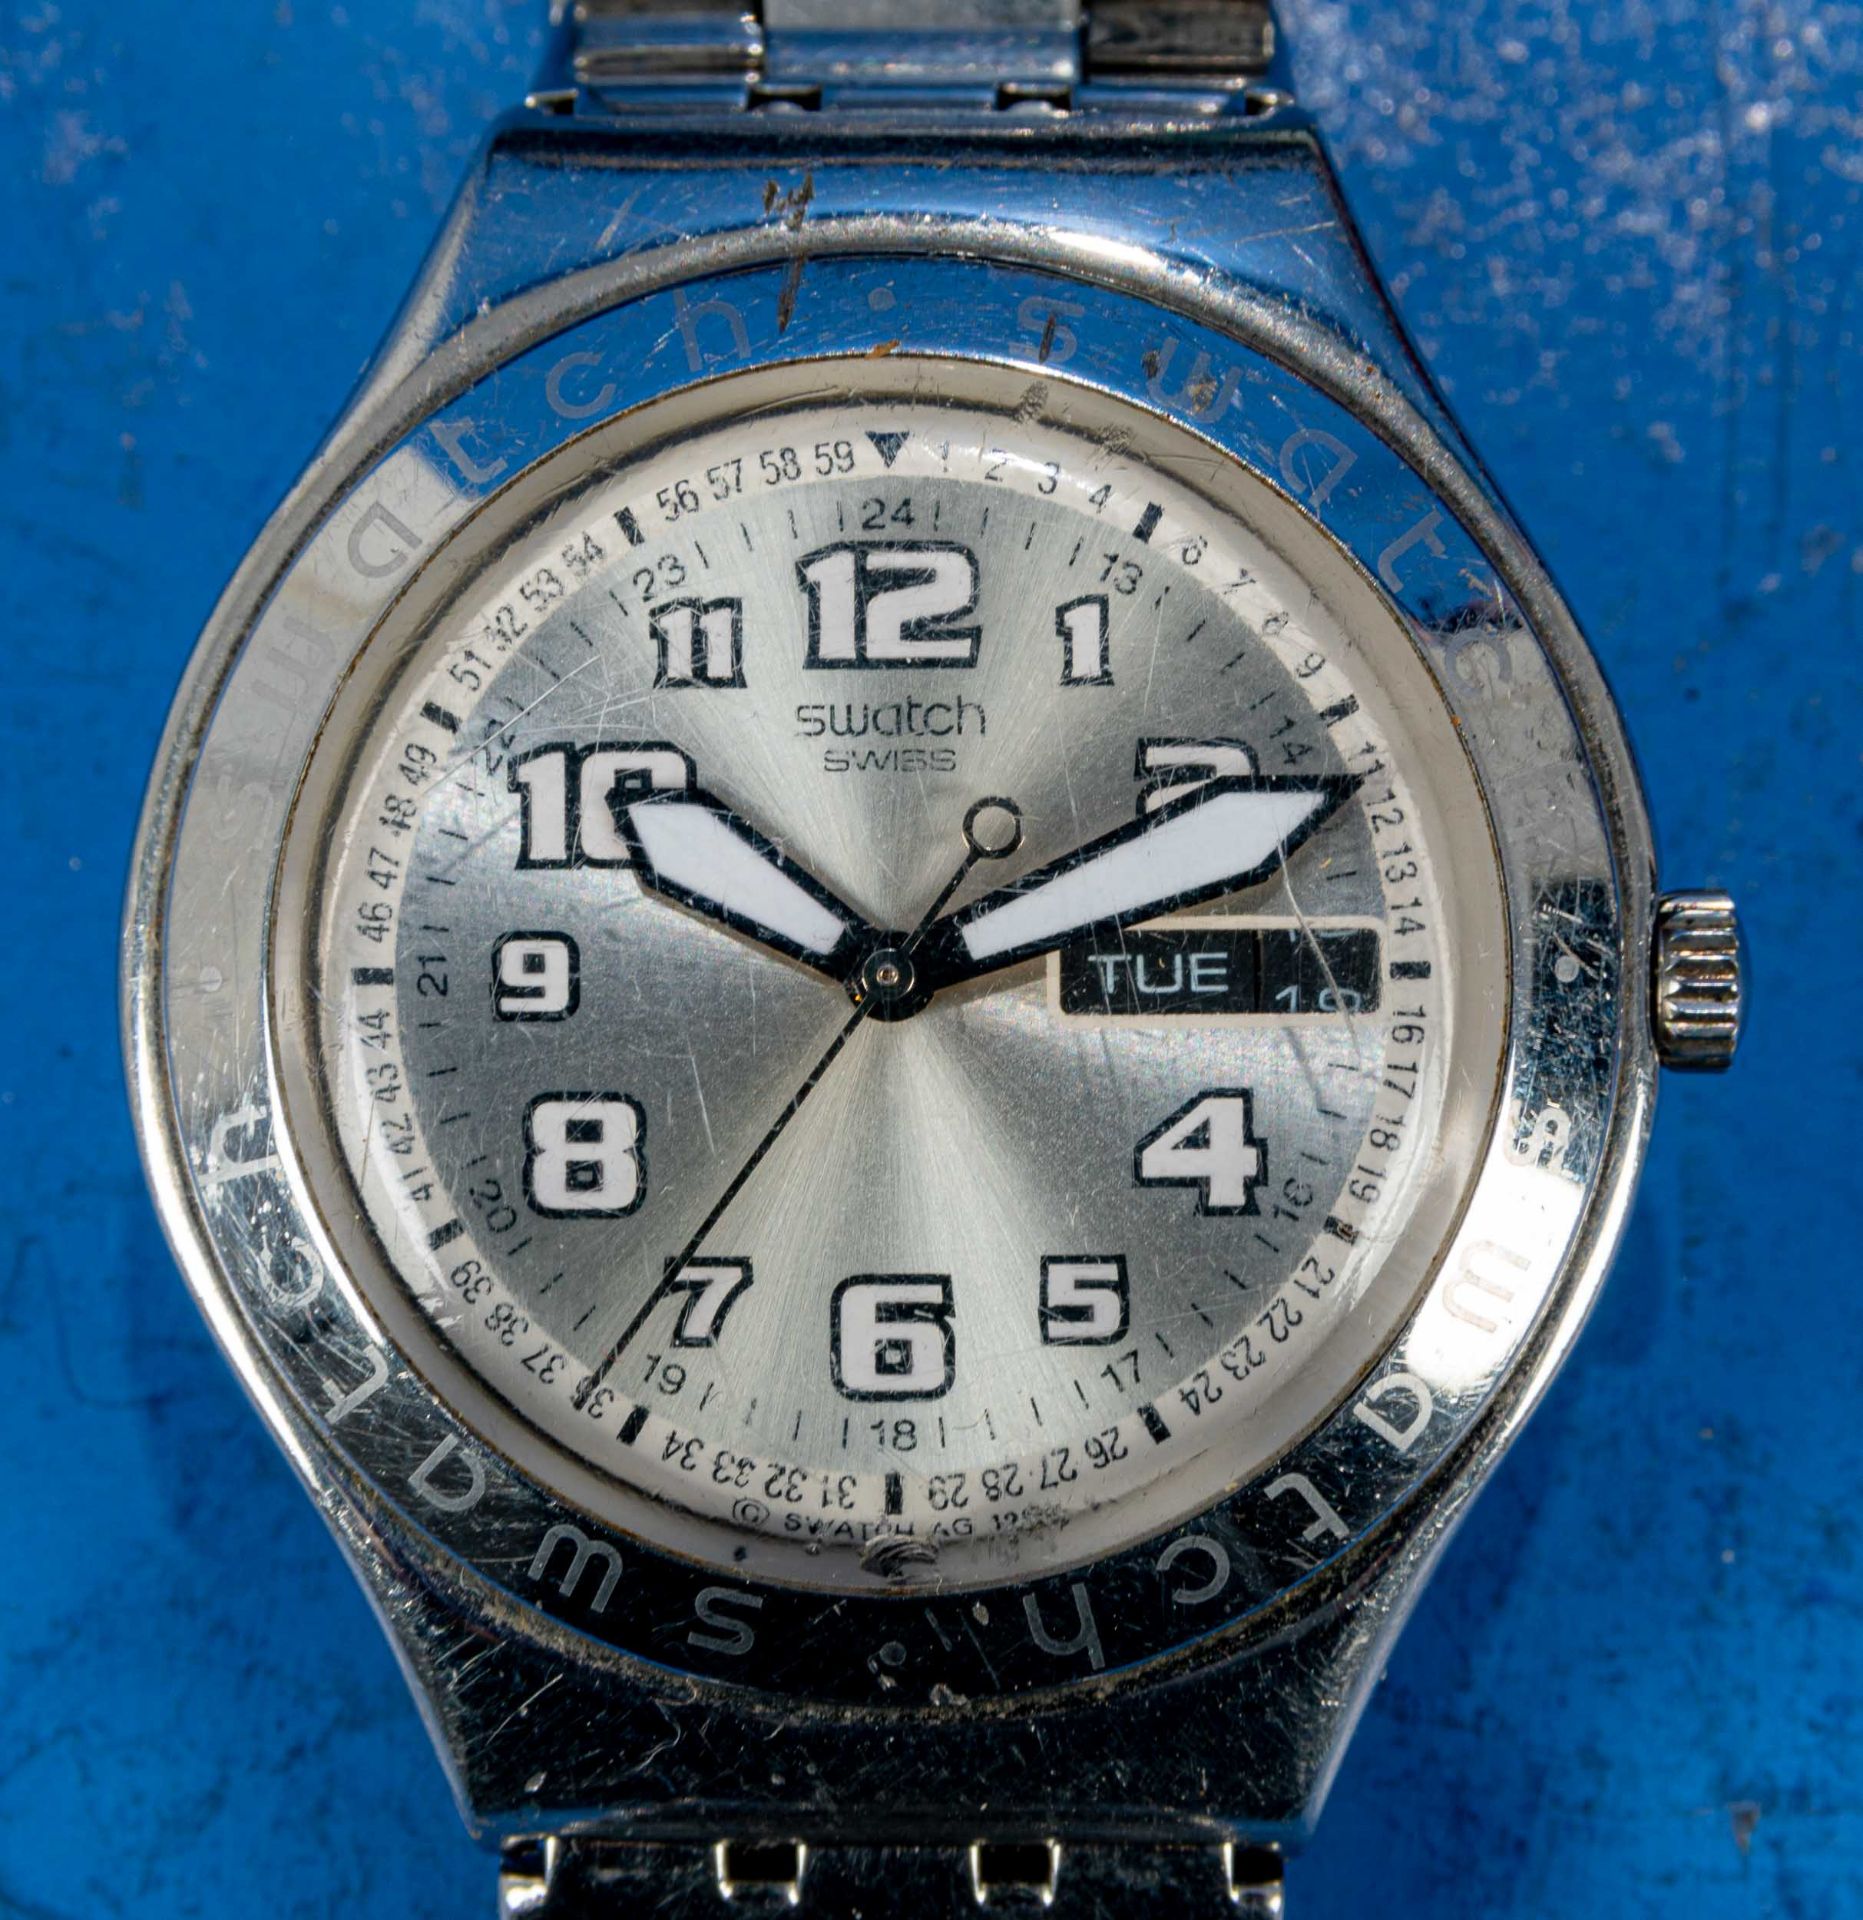 7teilige Uhrensammlung, u. a. der Marke Swatch; versch. Alter, Größen, Materialien, Hersteller, Wer - Image 8 of 8